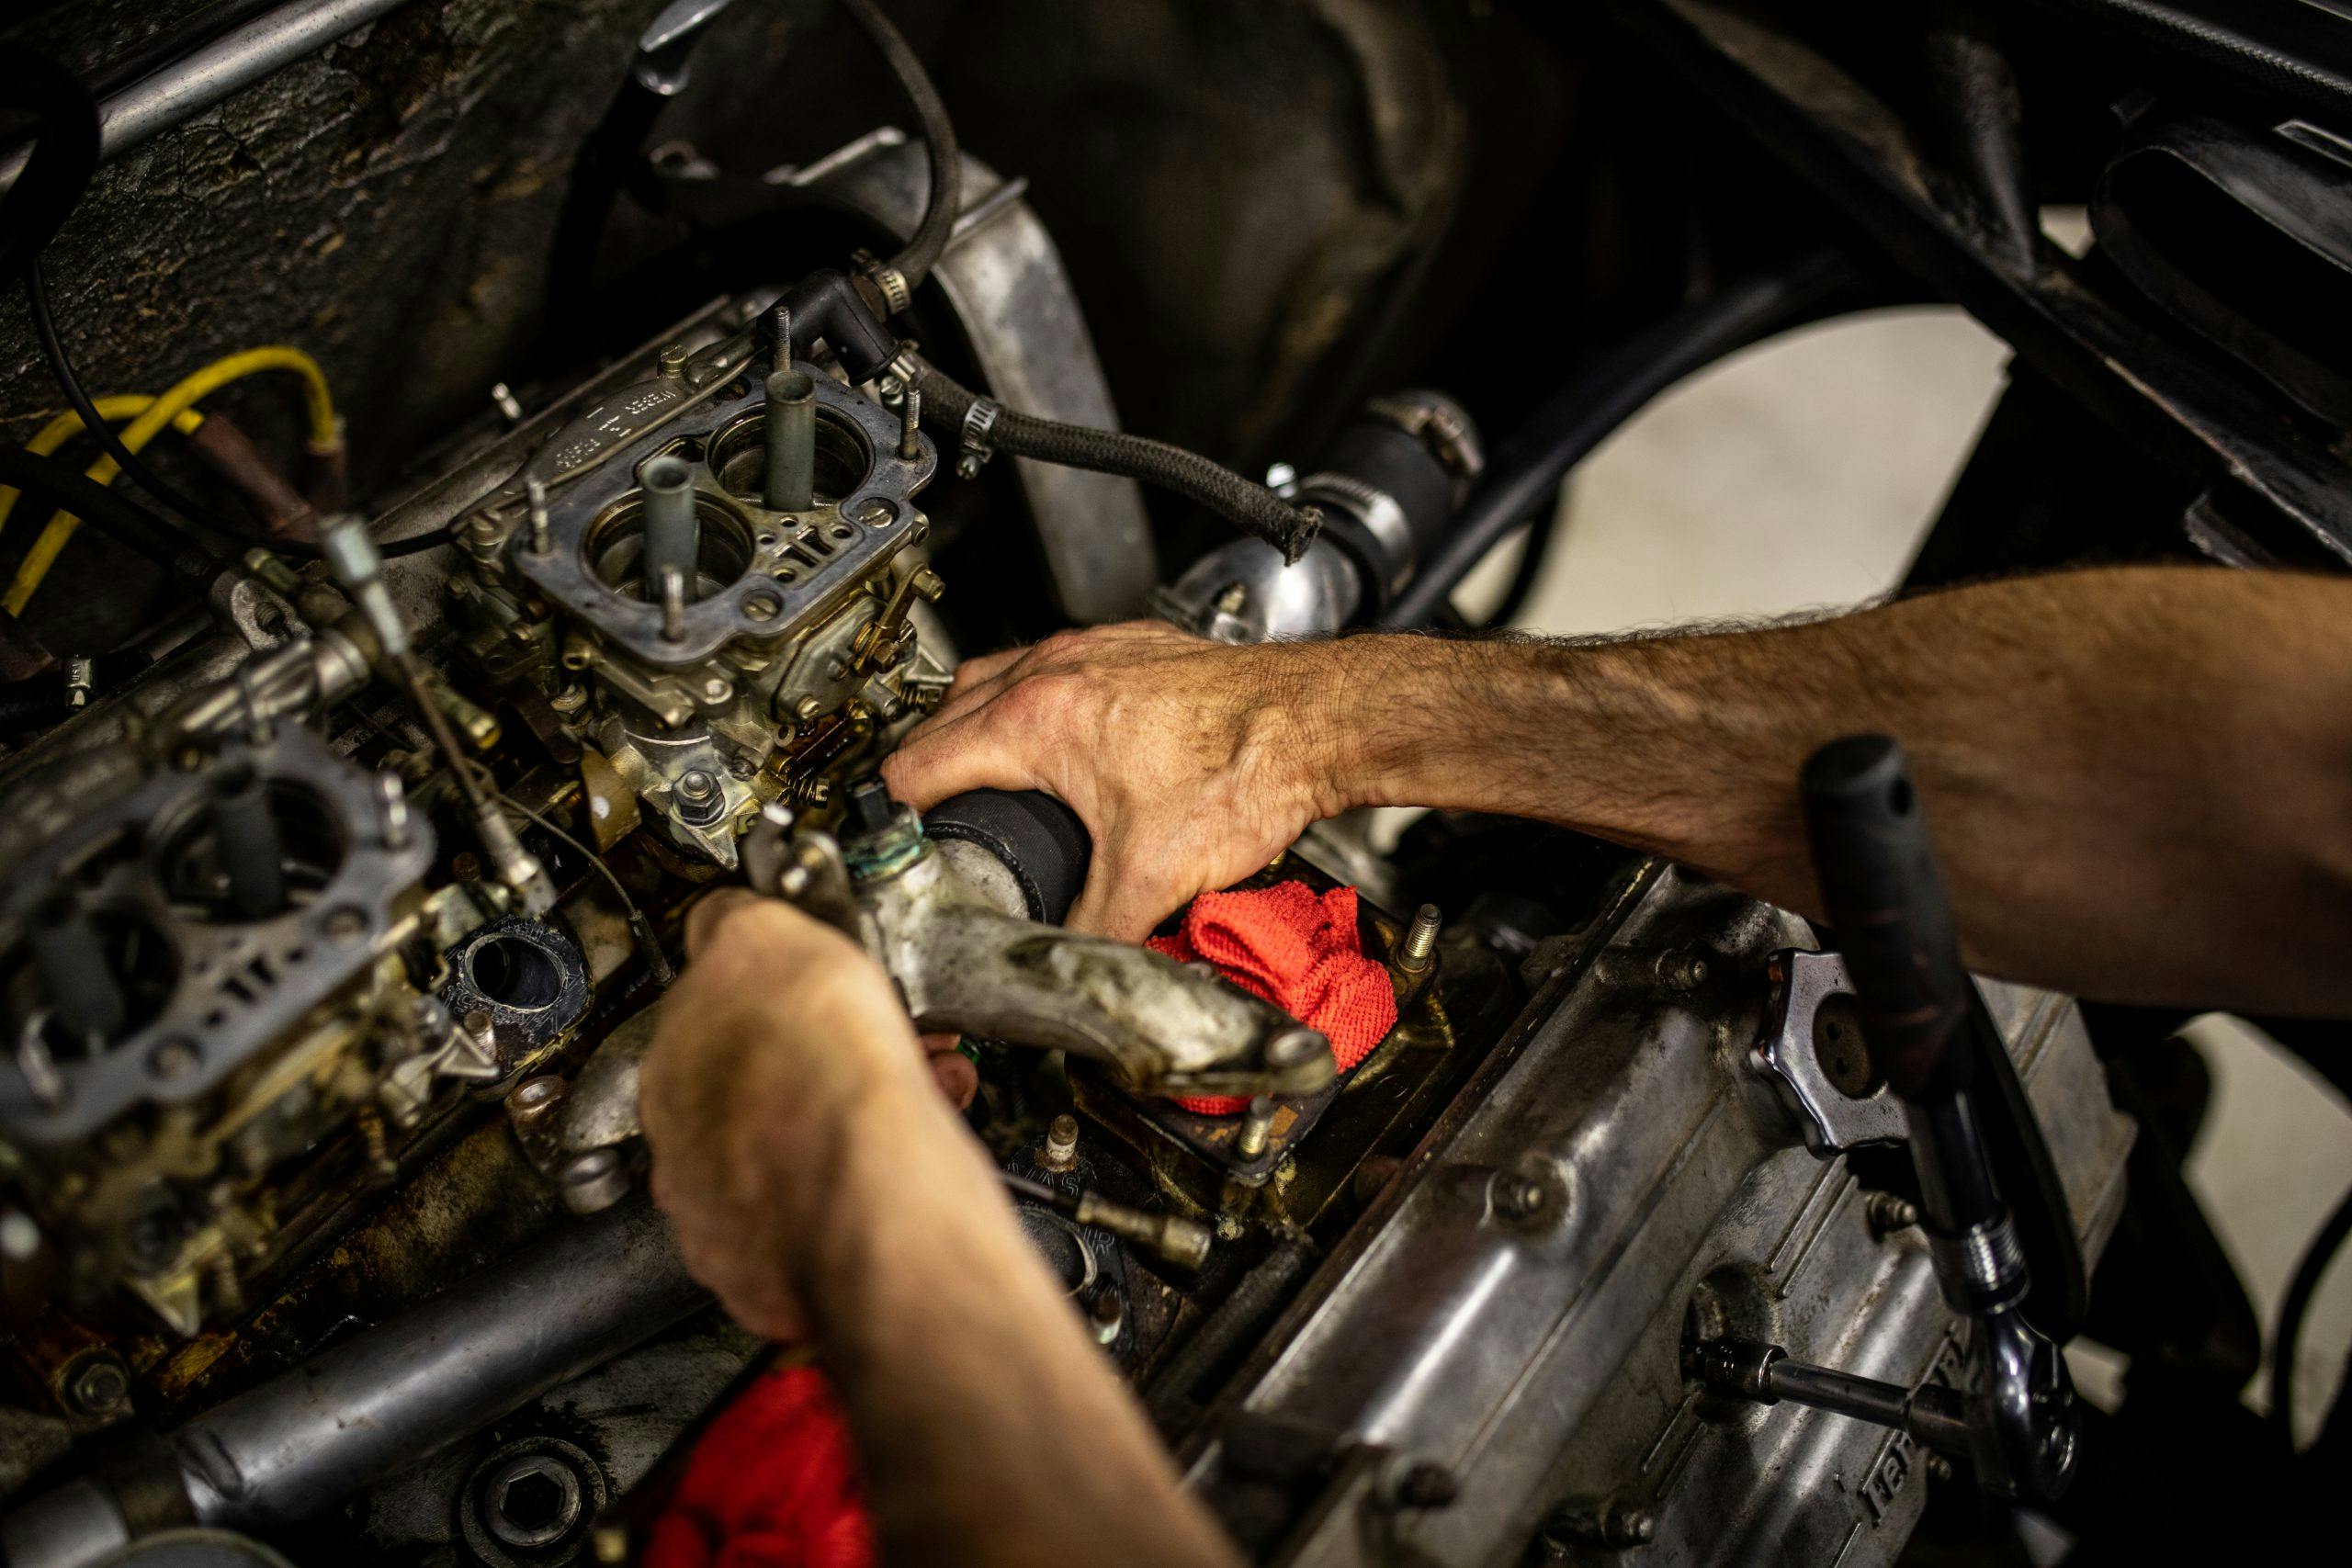 Ferrari Dino restoration engine hands working detail